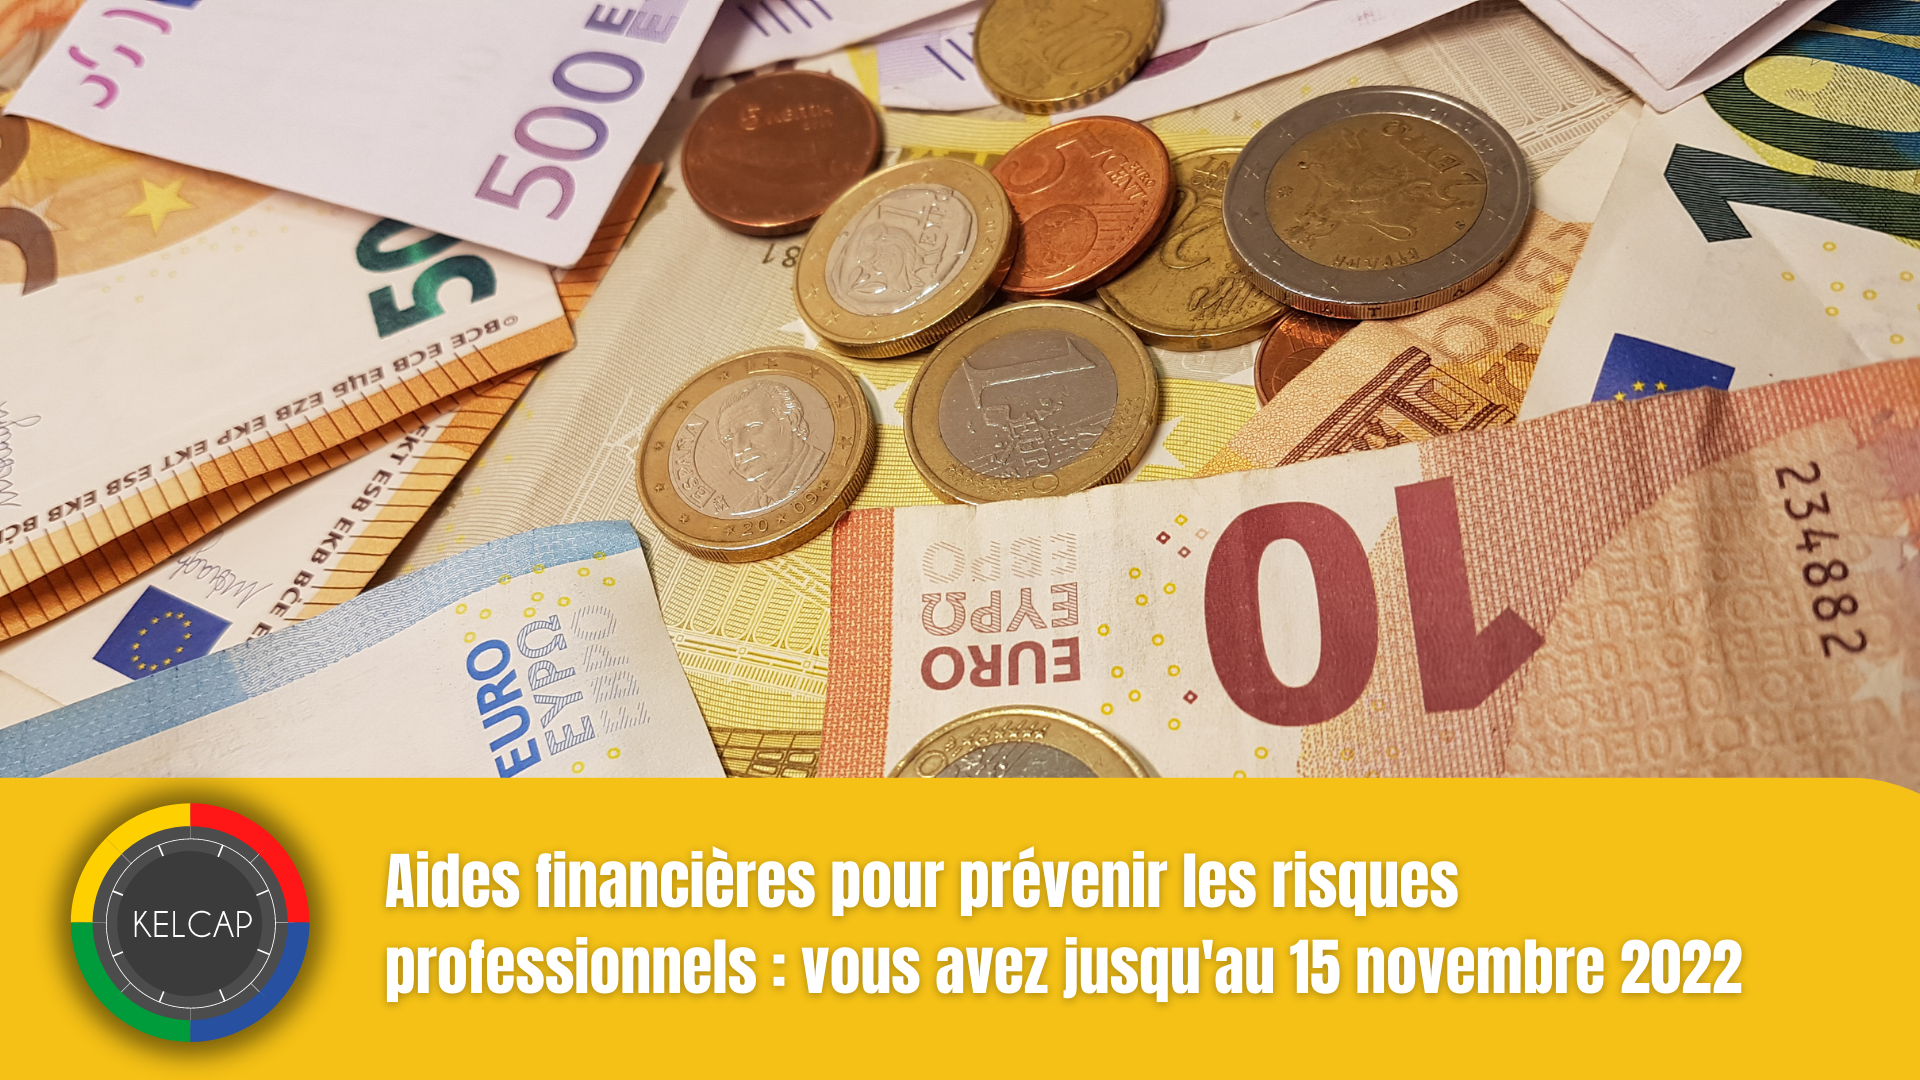 Aides financières pour prévenir les risques professionnels : vous avez jusqu’au 15 novembre 2022